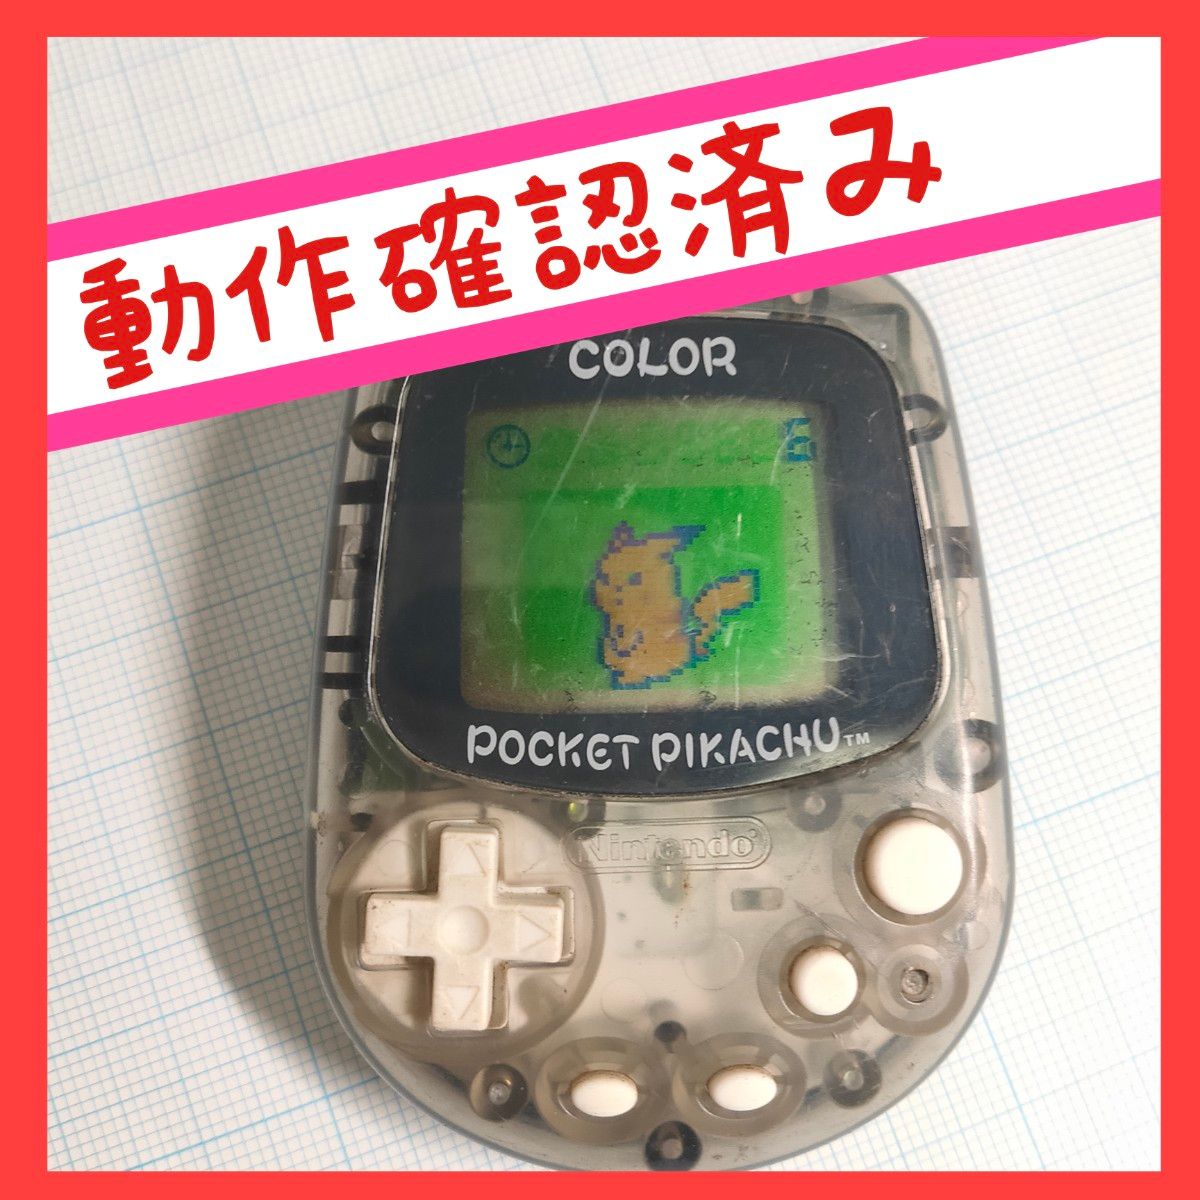 【動作確認済み】ポケットピカチュウ カラー 任天堂 万歩計 歩数計 ポケモン POCKET PIKACHU  Nintendo